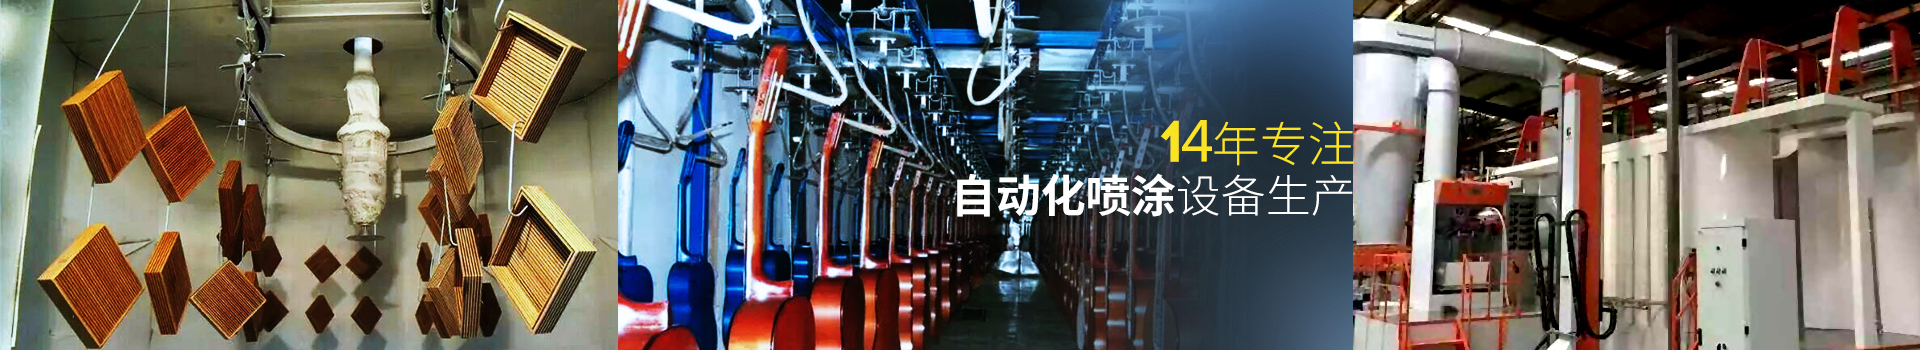 香港最快现场直播记录-14年专注自动化喷涂设备生产